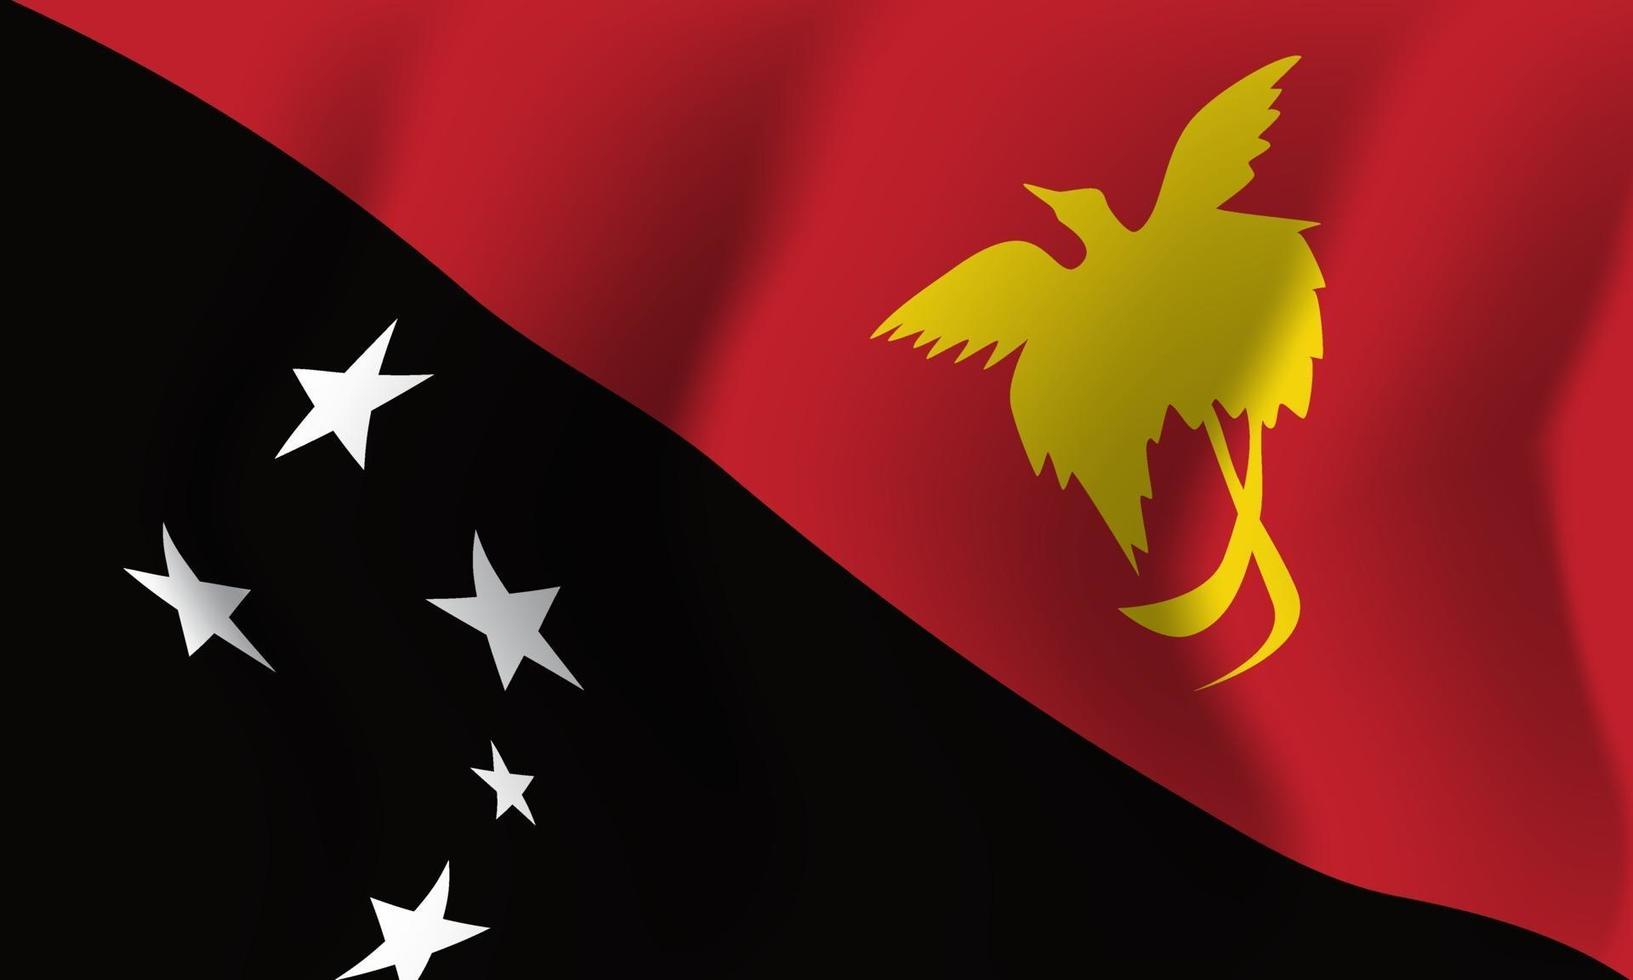 Nouvelle Guinée